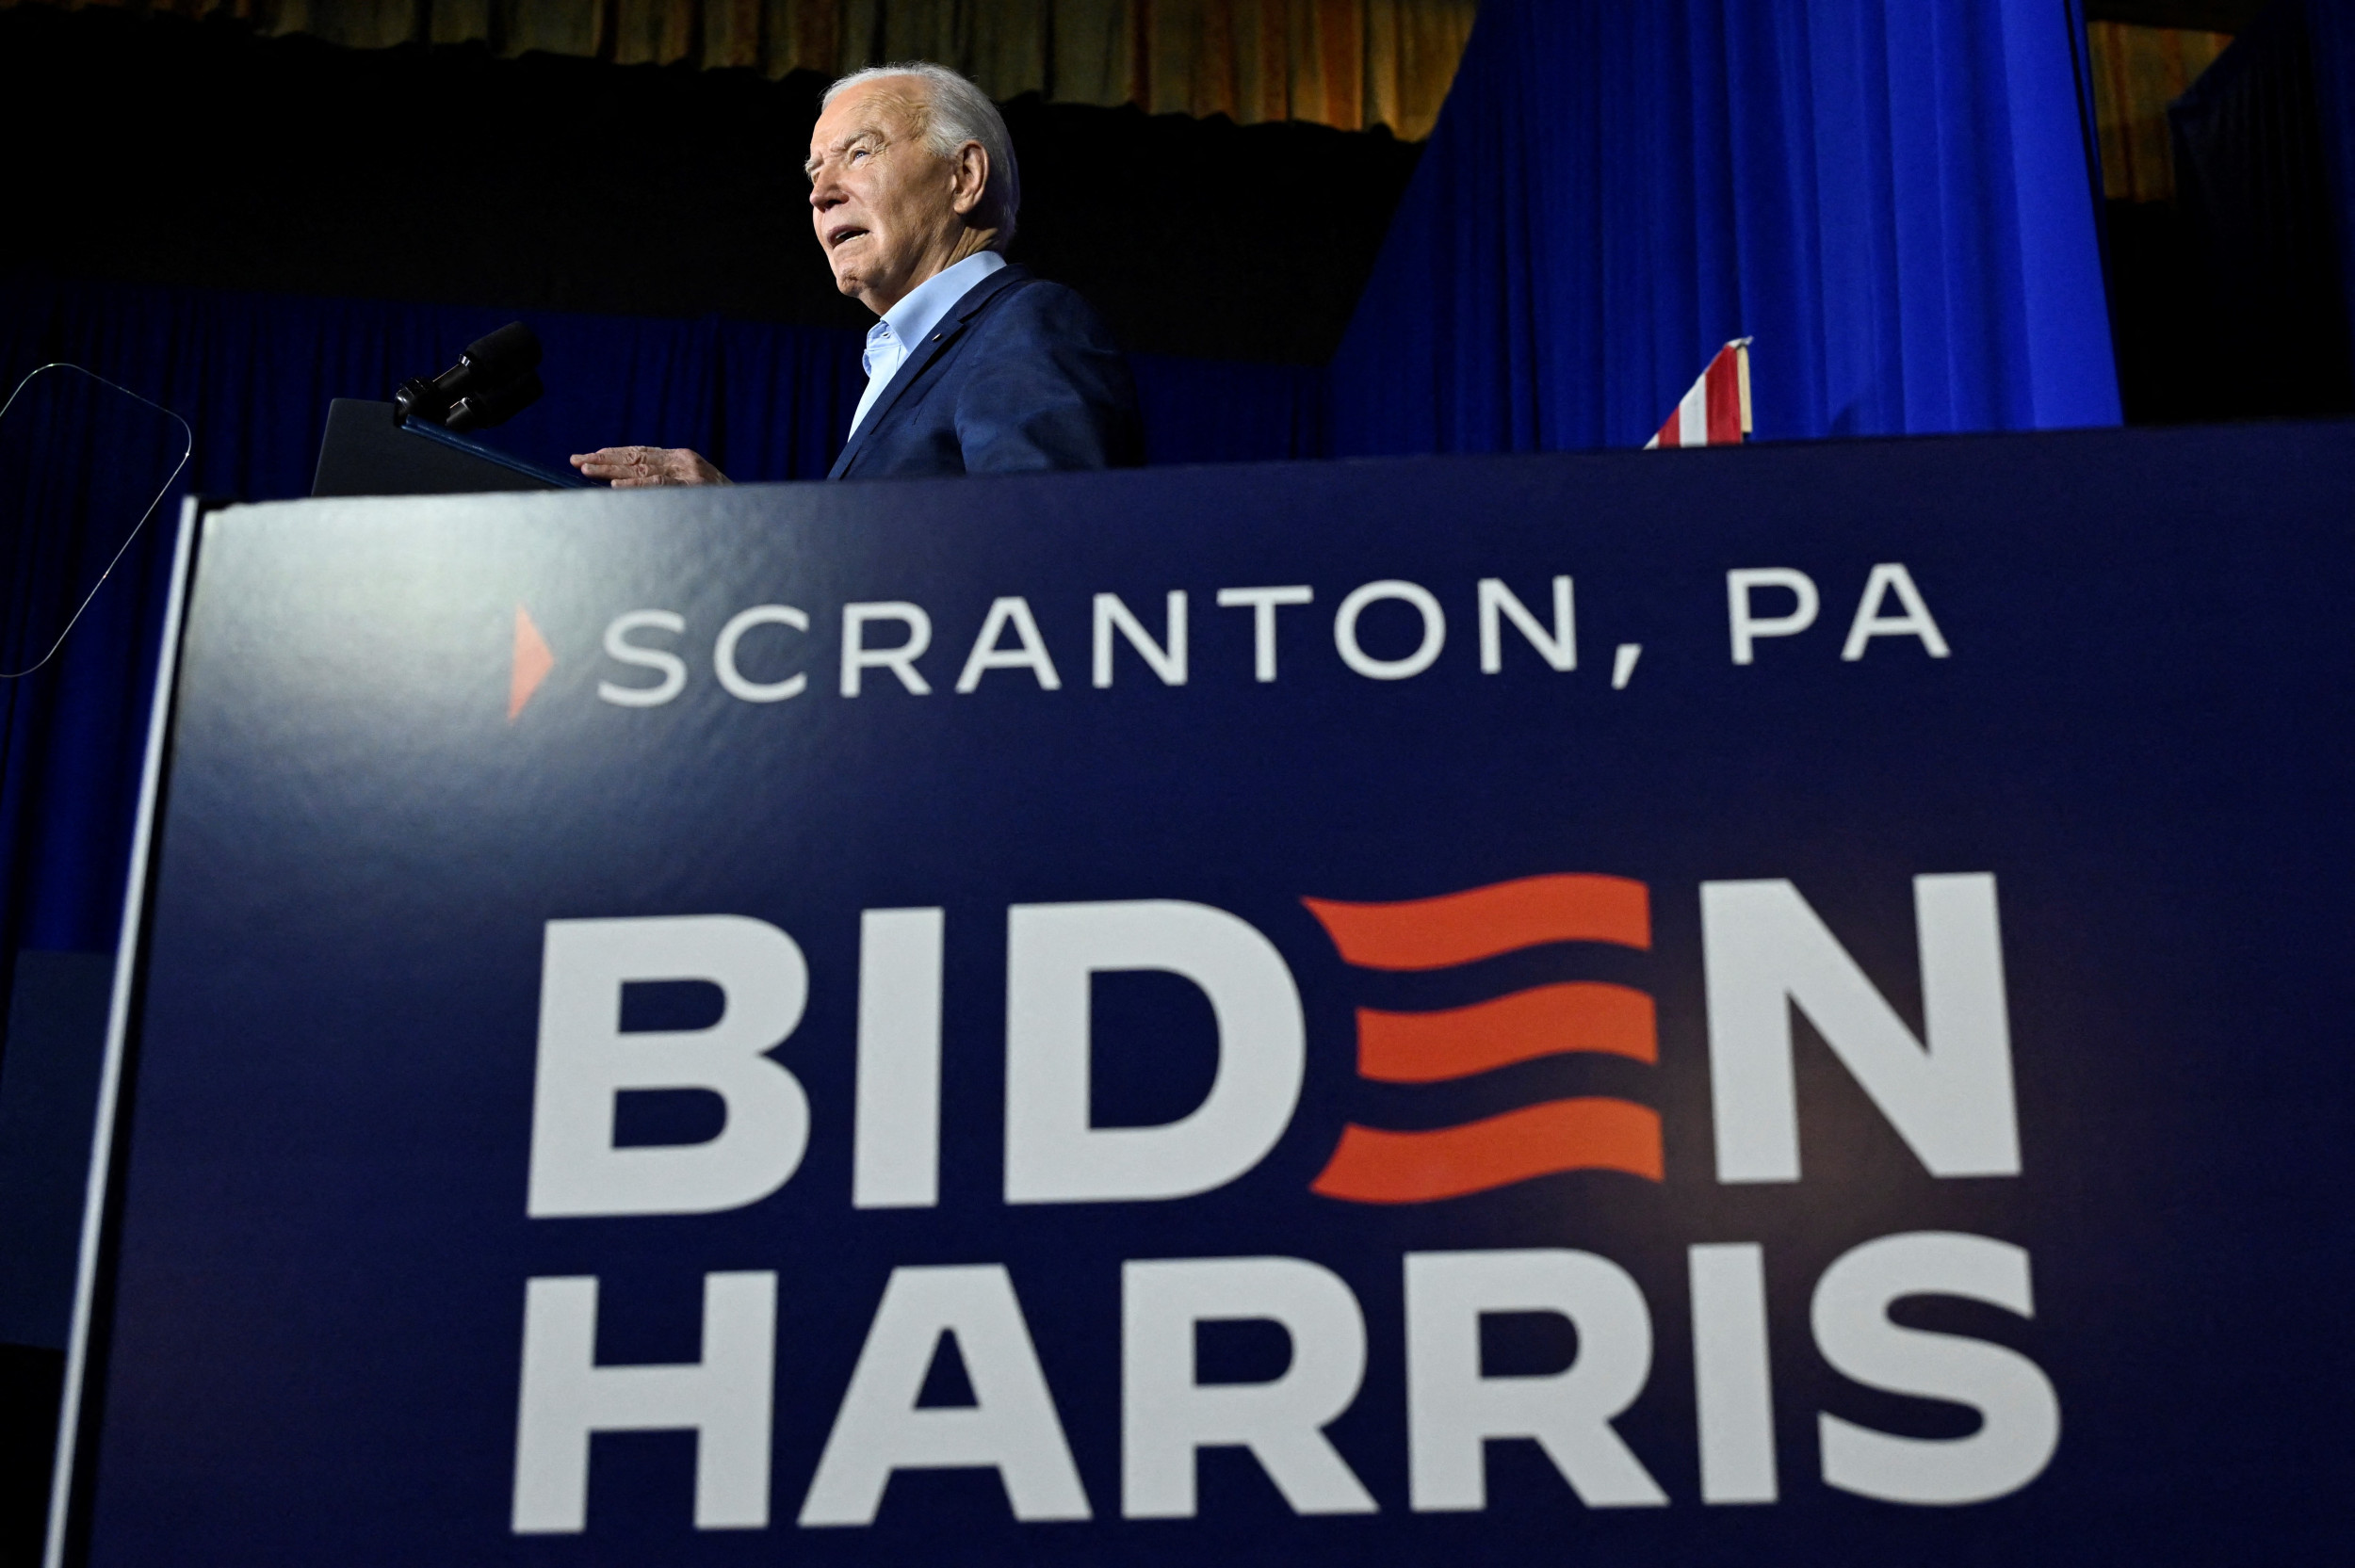 Did Joe Biden speak to empty seats in Scranton? Photo of event goes viral